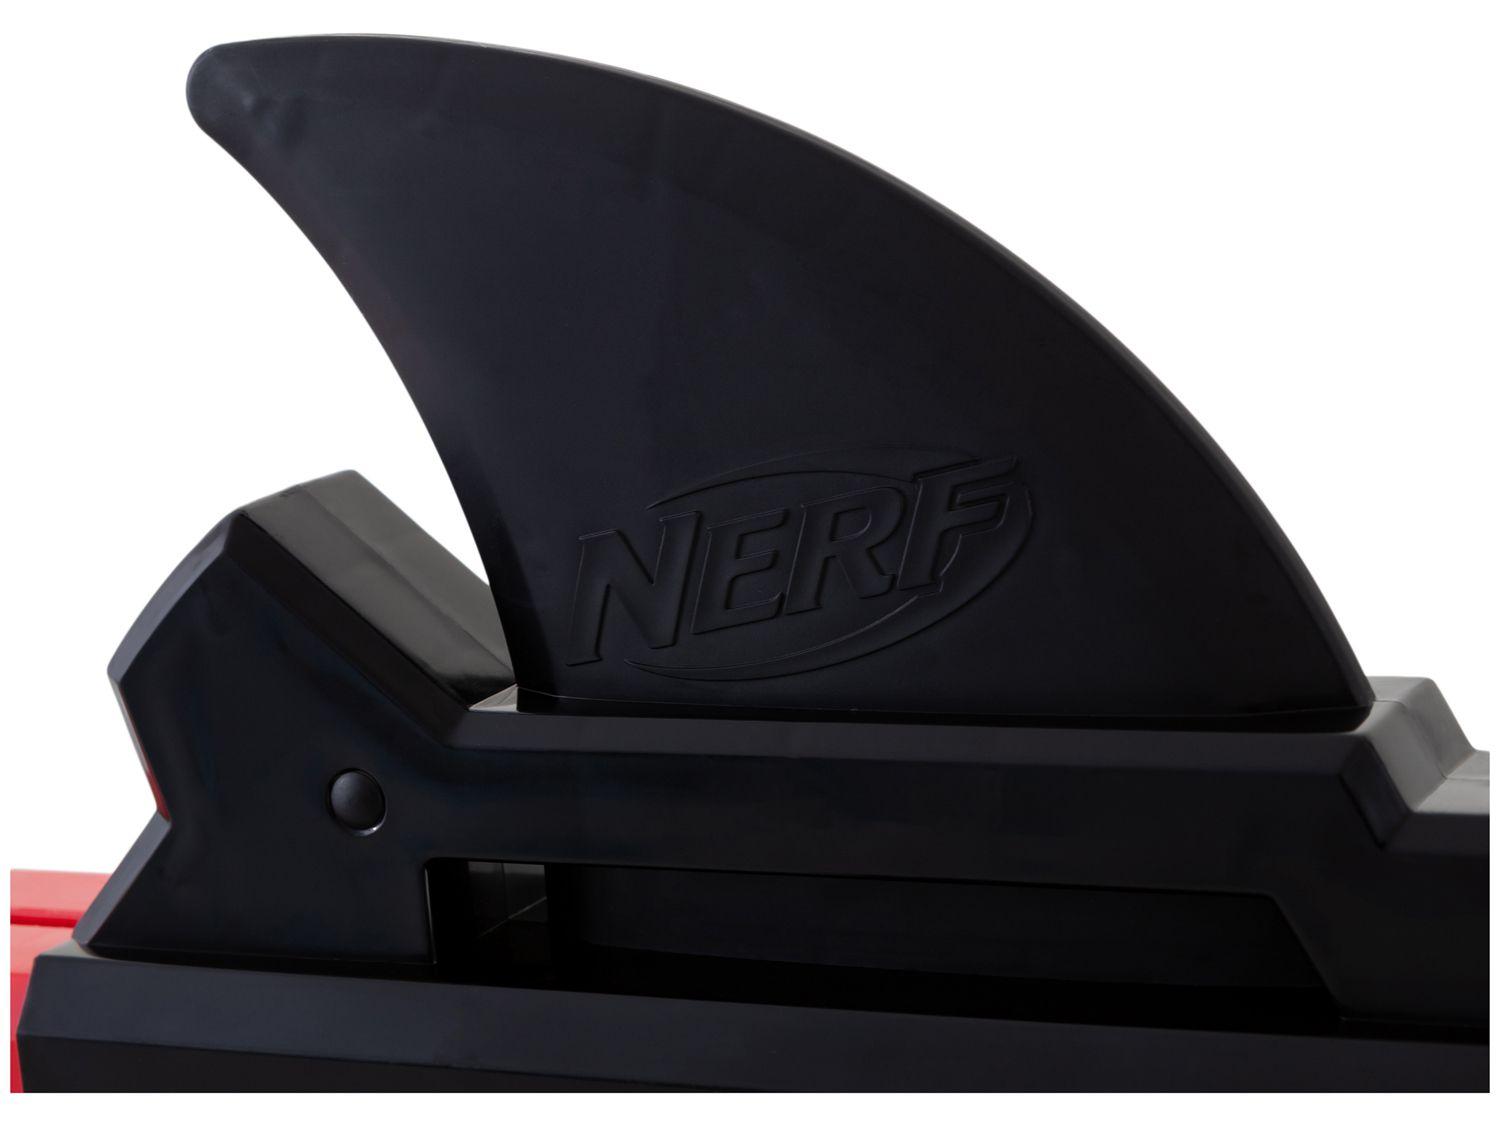 Lança Dardos Nerf Mega Roblox Shark Seeker Blaster - Hasbro